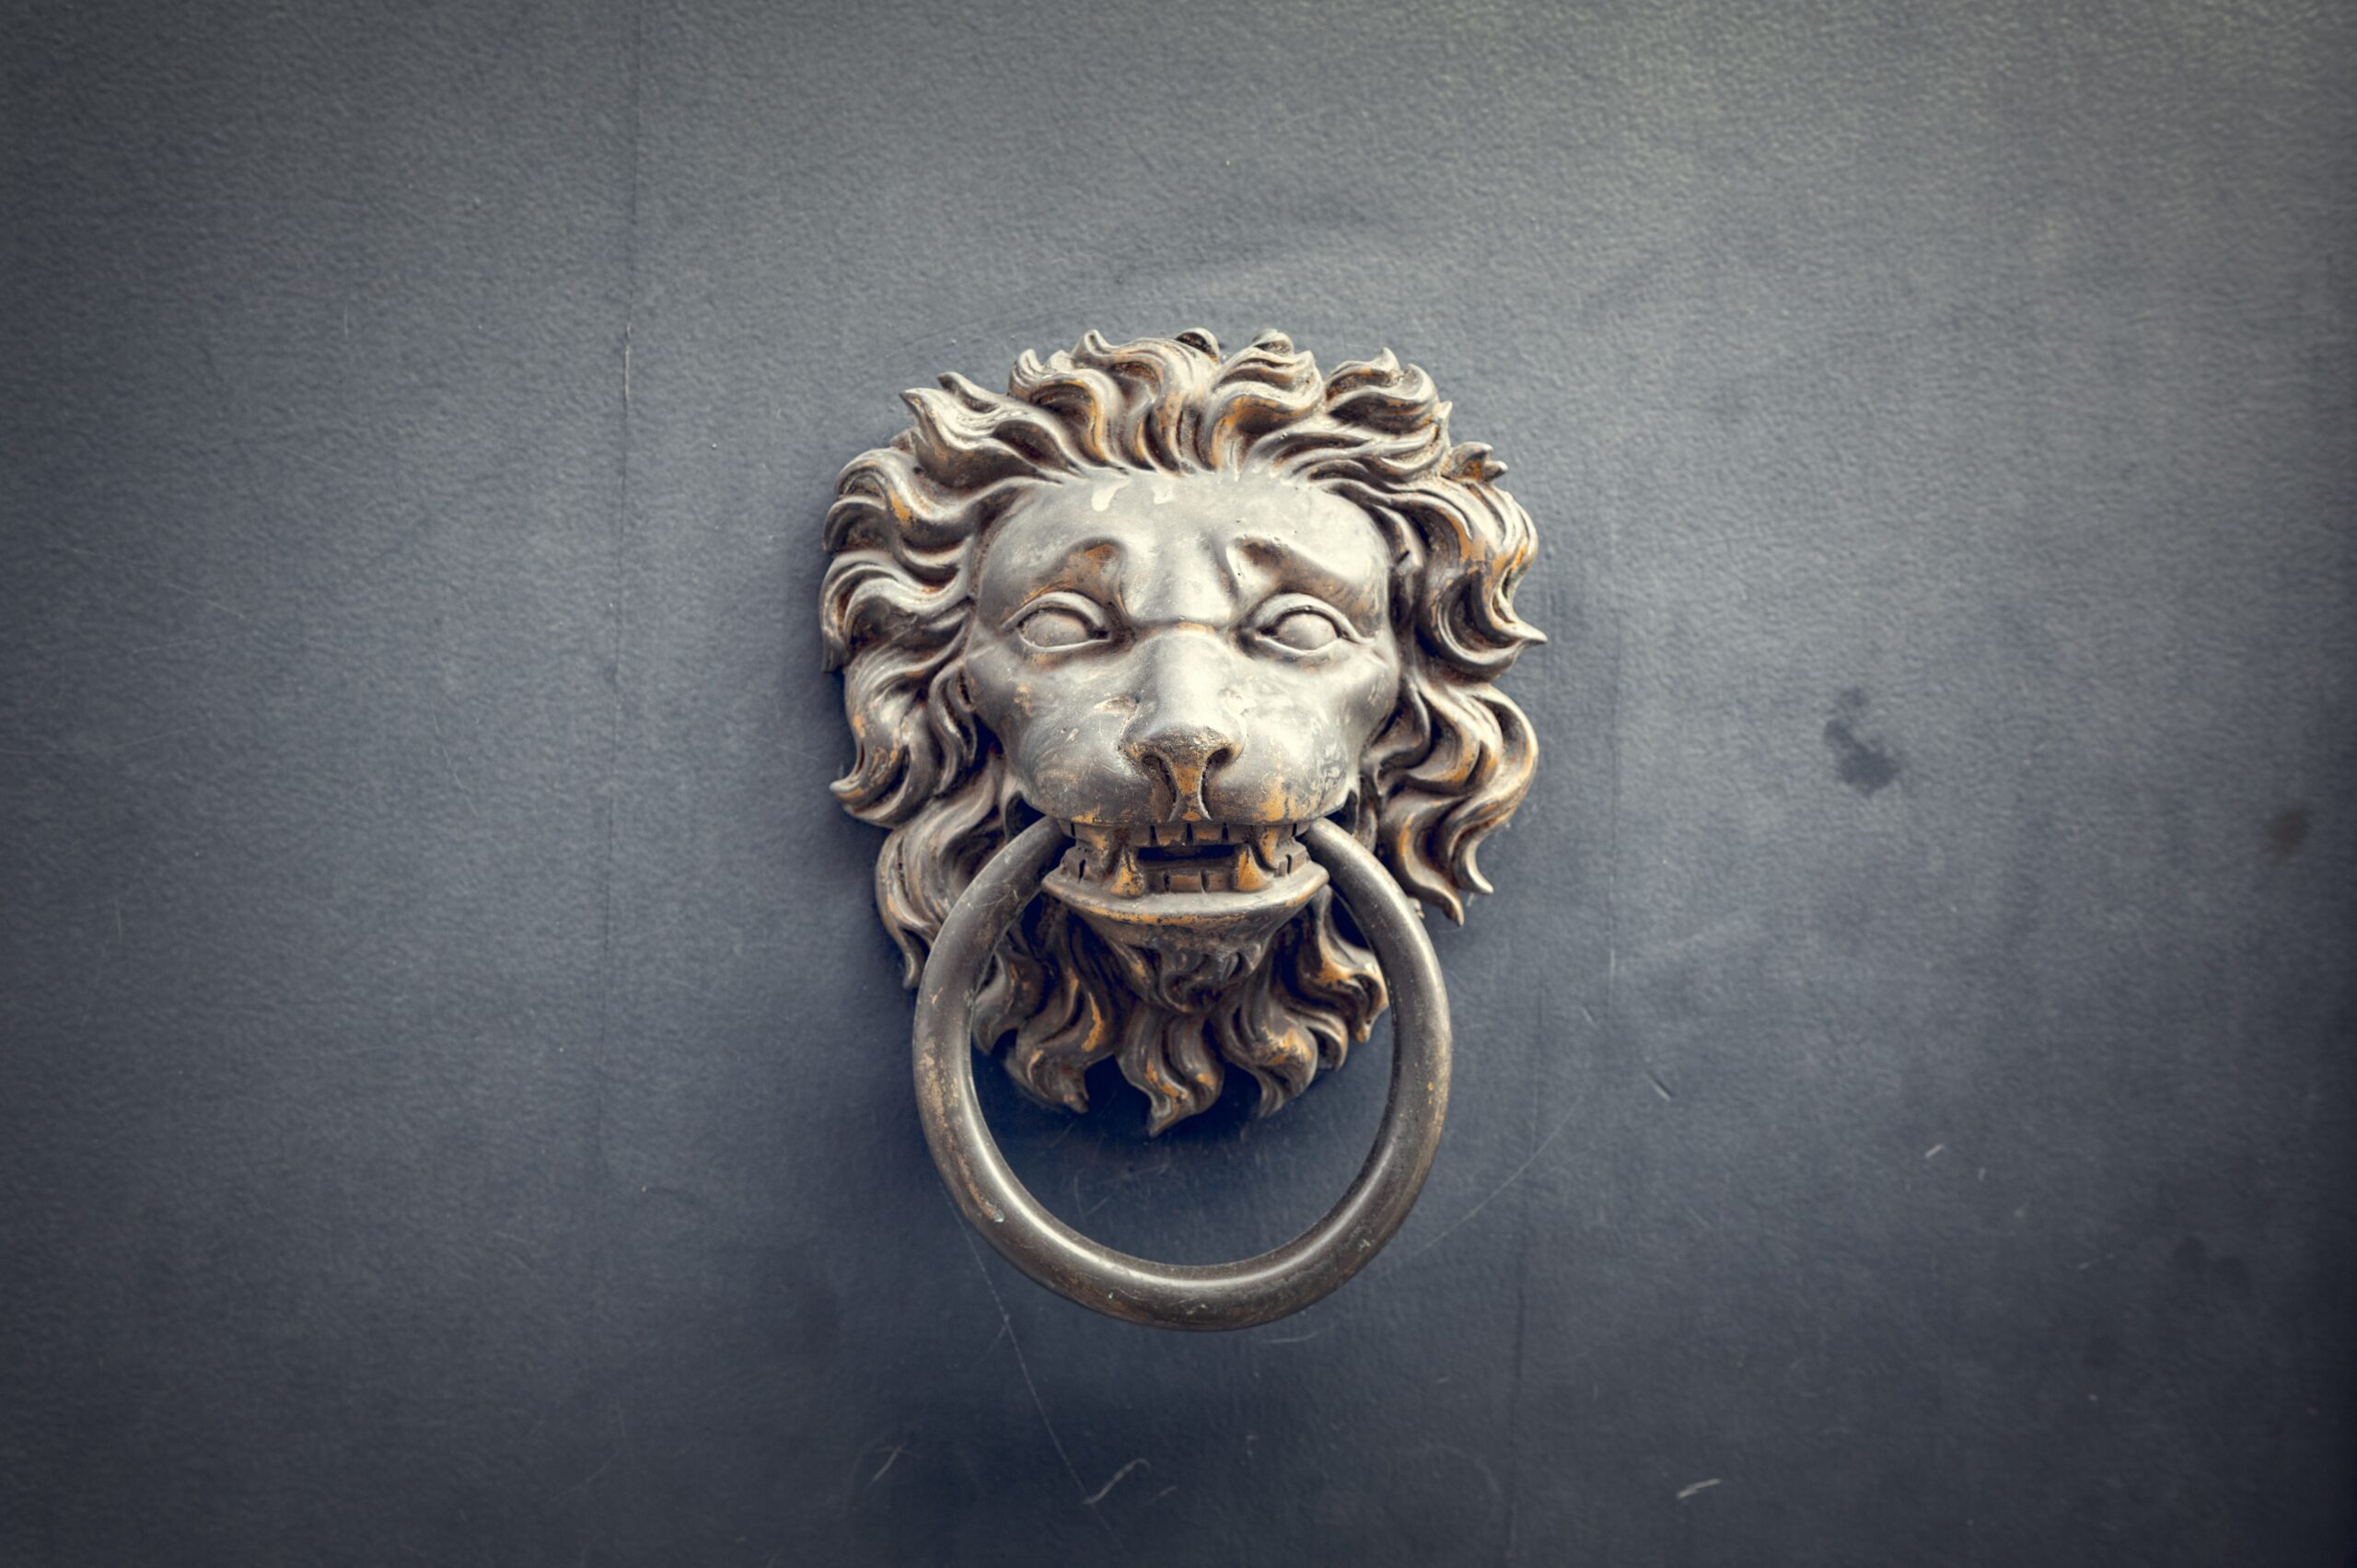 A lion's head door knocker attached to a front door